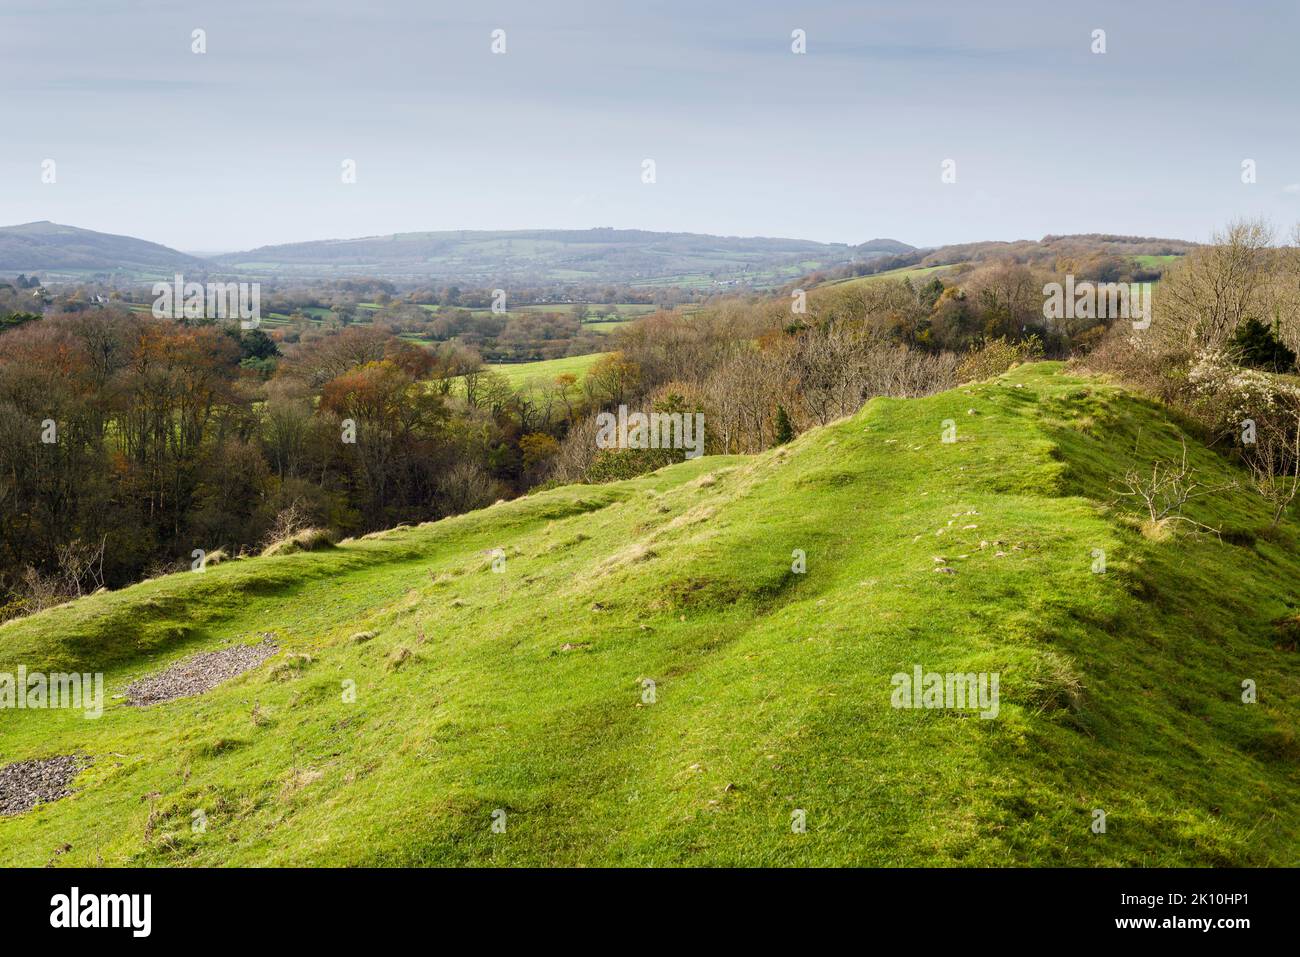 Les remparts défensifs du fort de la colline à Dolebury Warren dans la région des collines de Mendip d'une beauté naturelle exceptionnelle, dans le nord du Somerset, en Angleterre. Banque D'Images